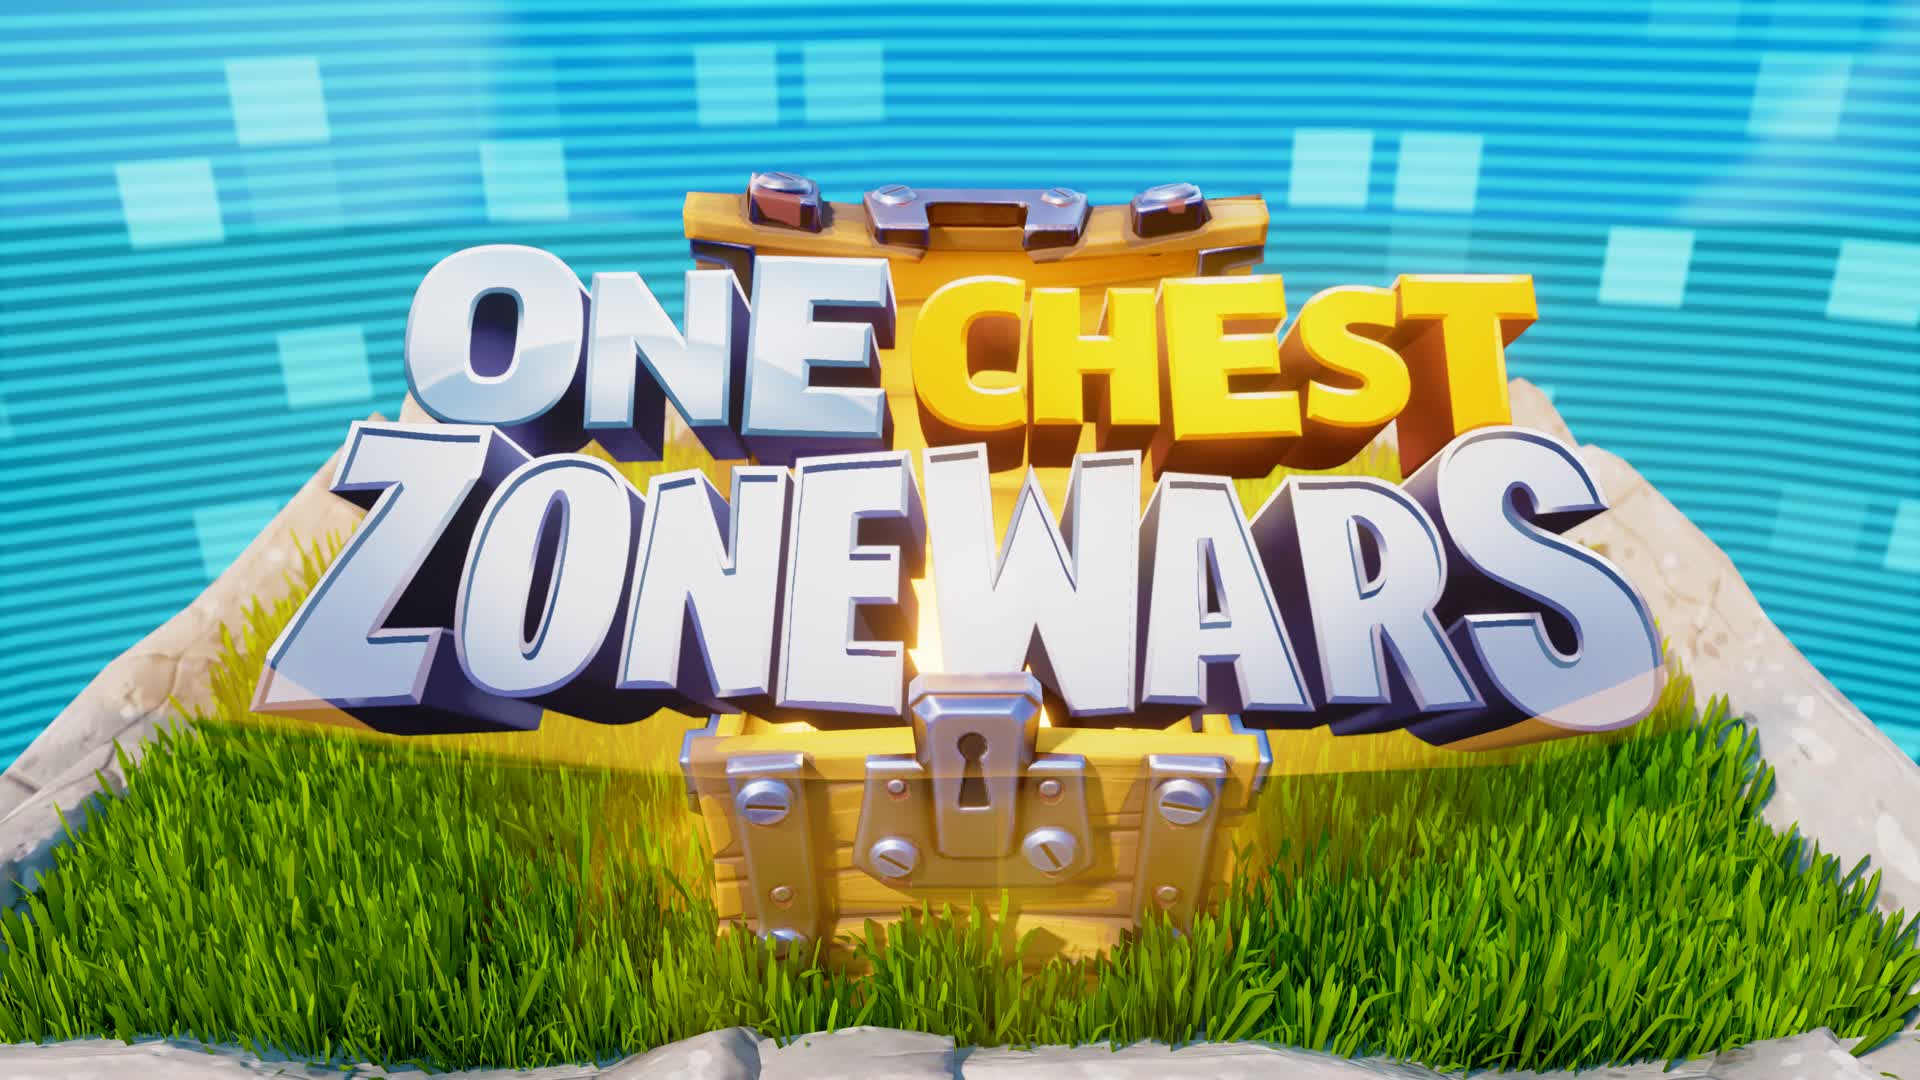 【注目の島】ONE CHEST Zone Wars